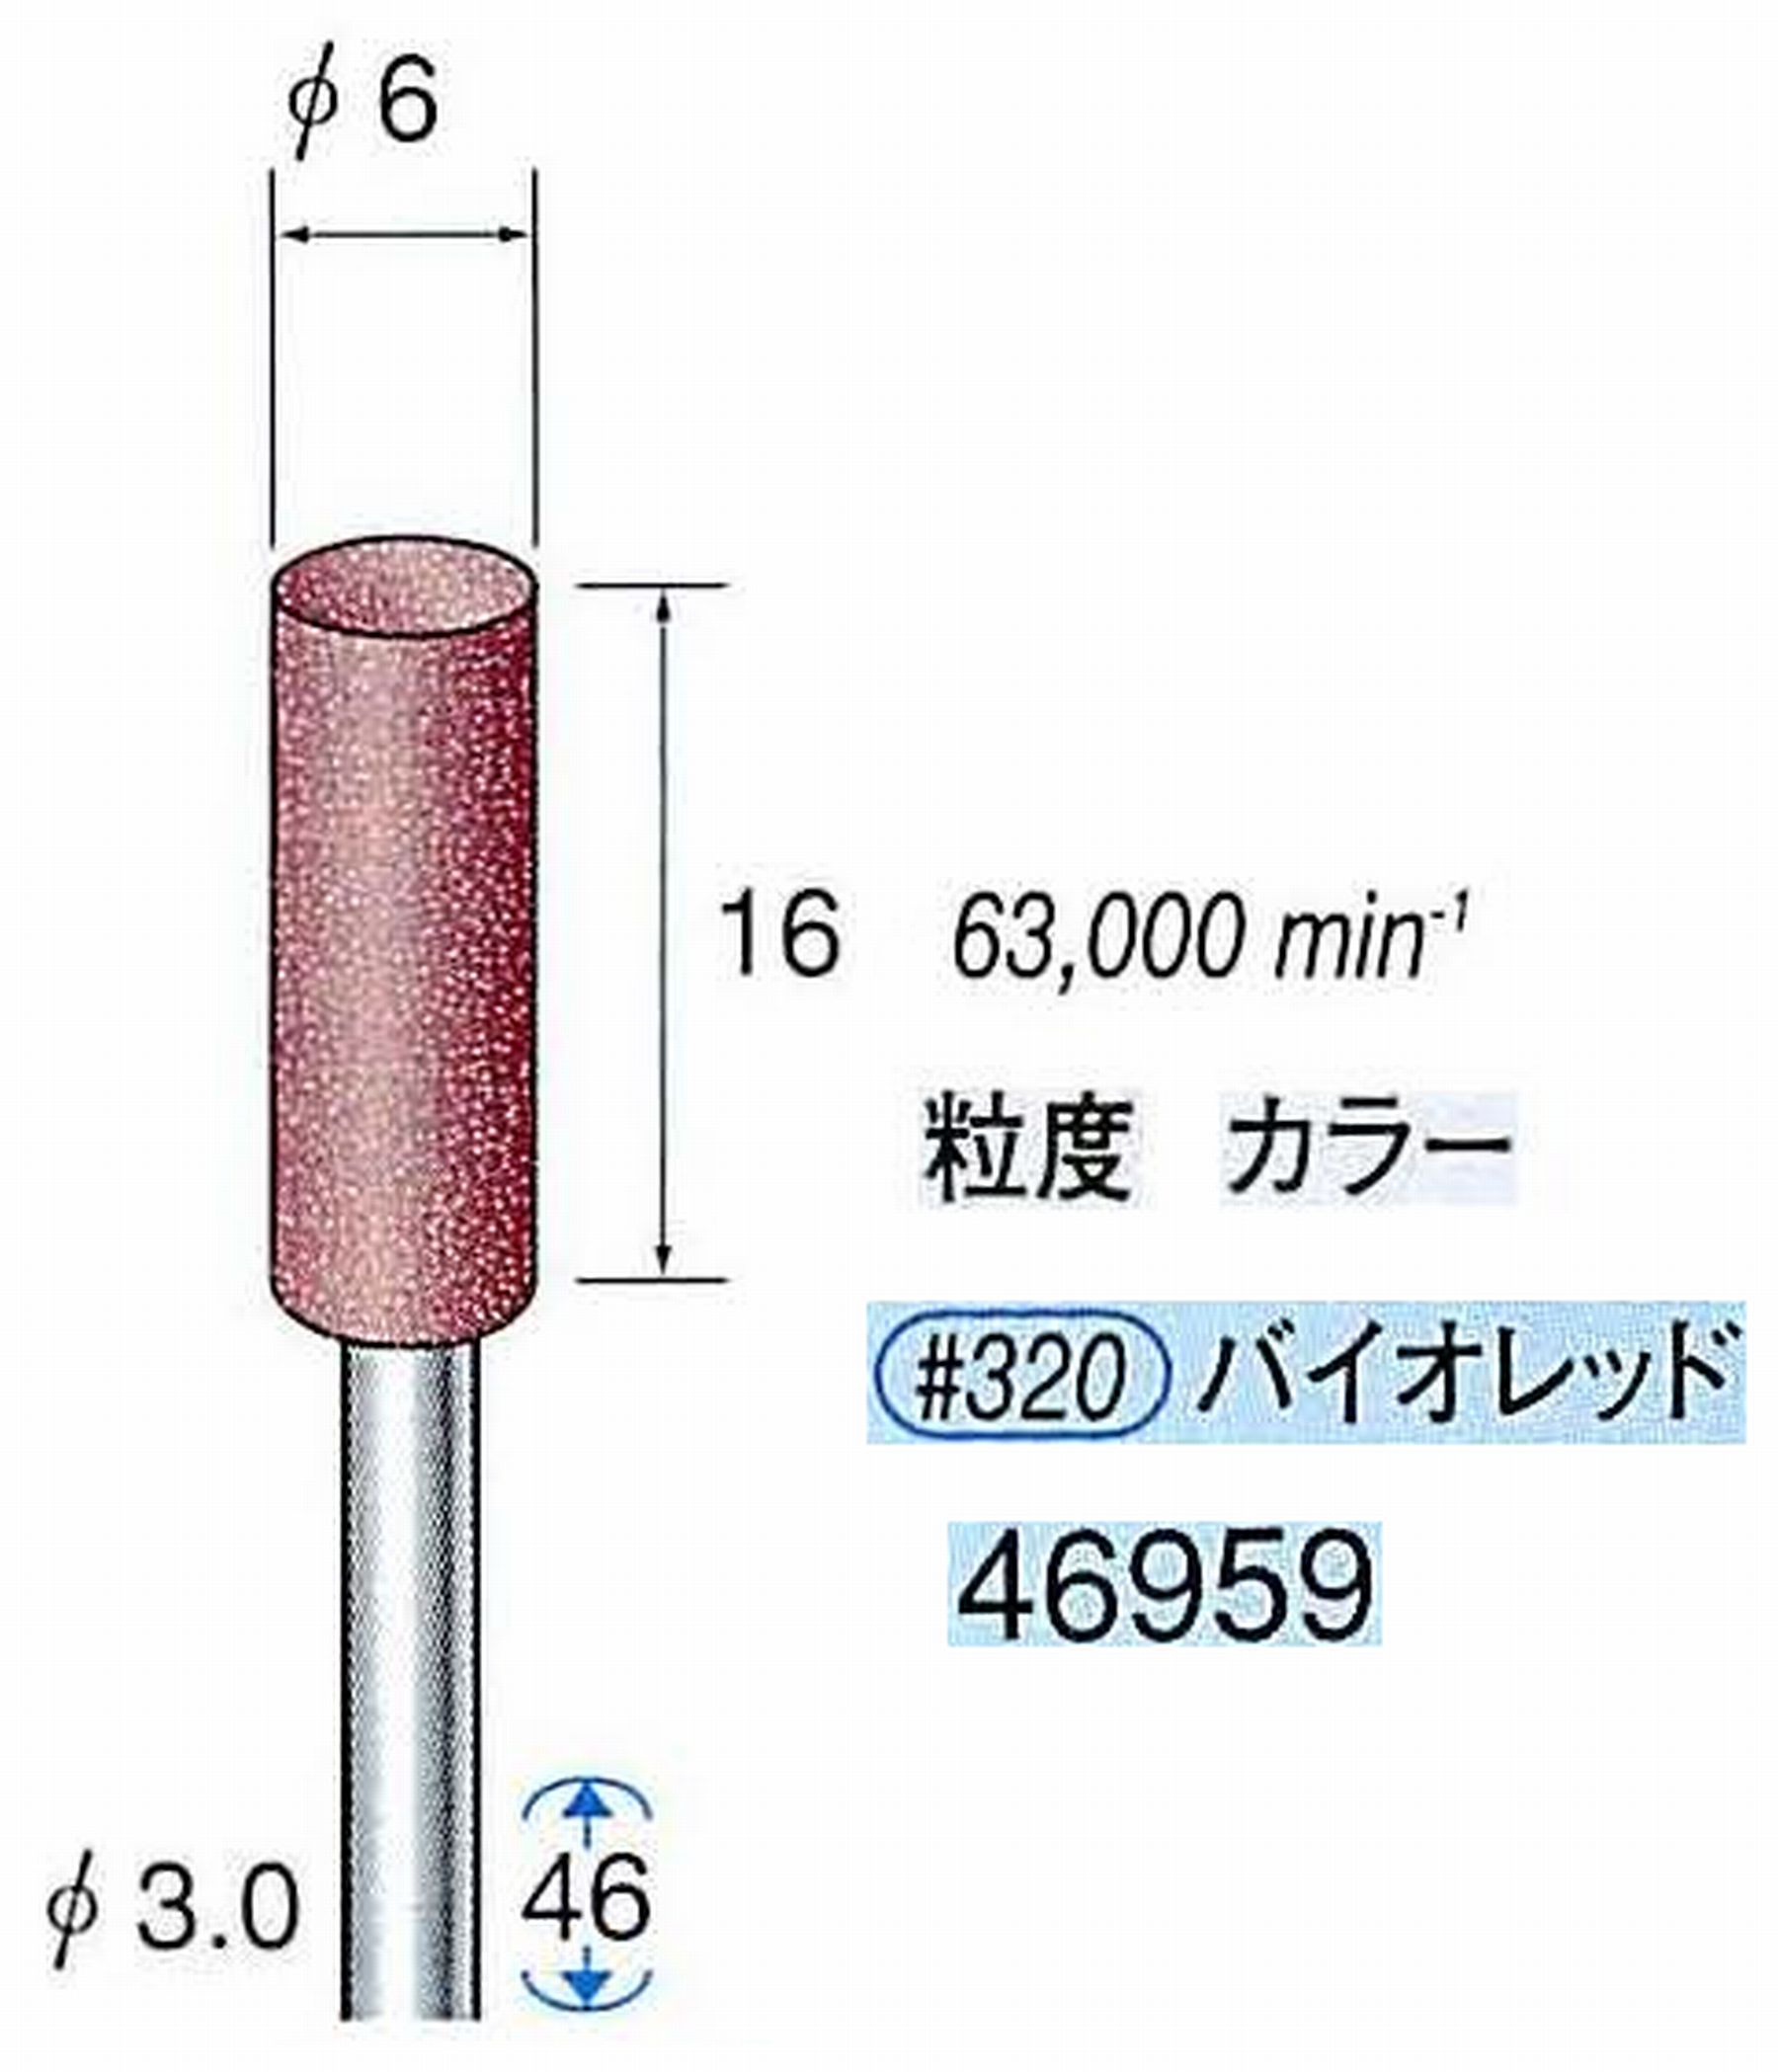 ナカニシ/NAKANISHI 高速回転用スペシャルゴム砥石(WA砥粒)ゴム質の硬さ：ミディアム 軸径(シャンク) φ3.0mm 46959